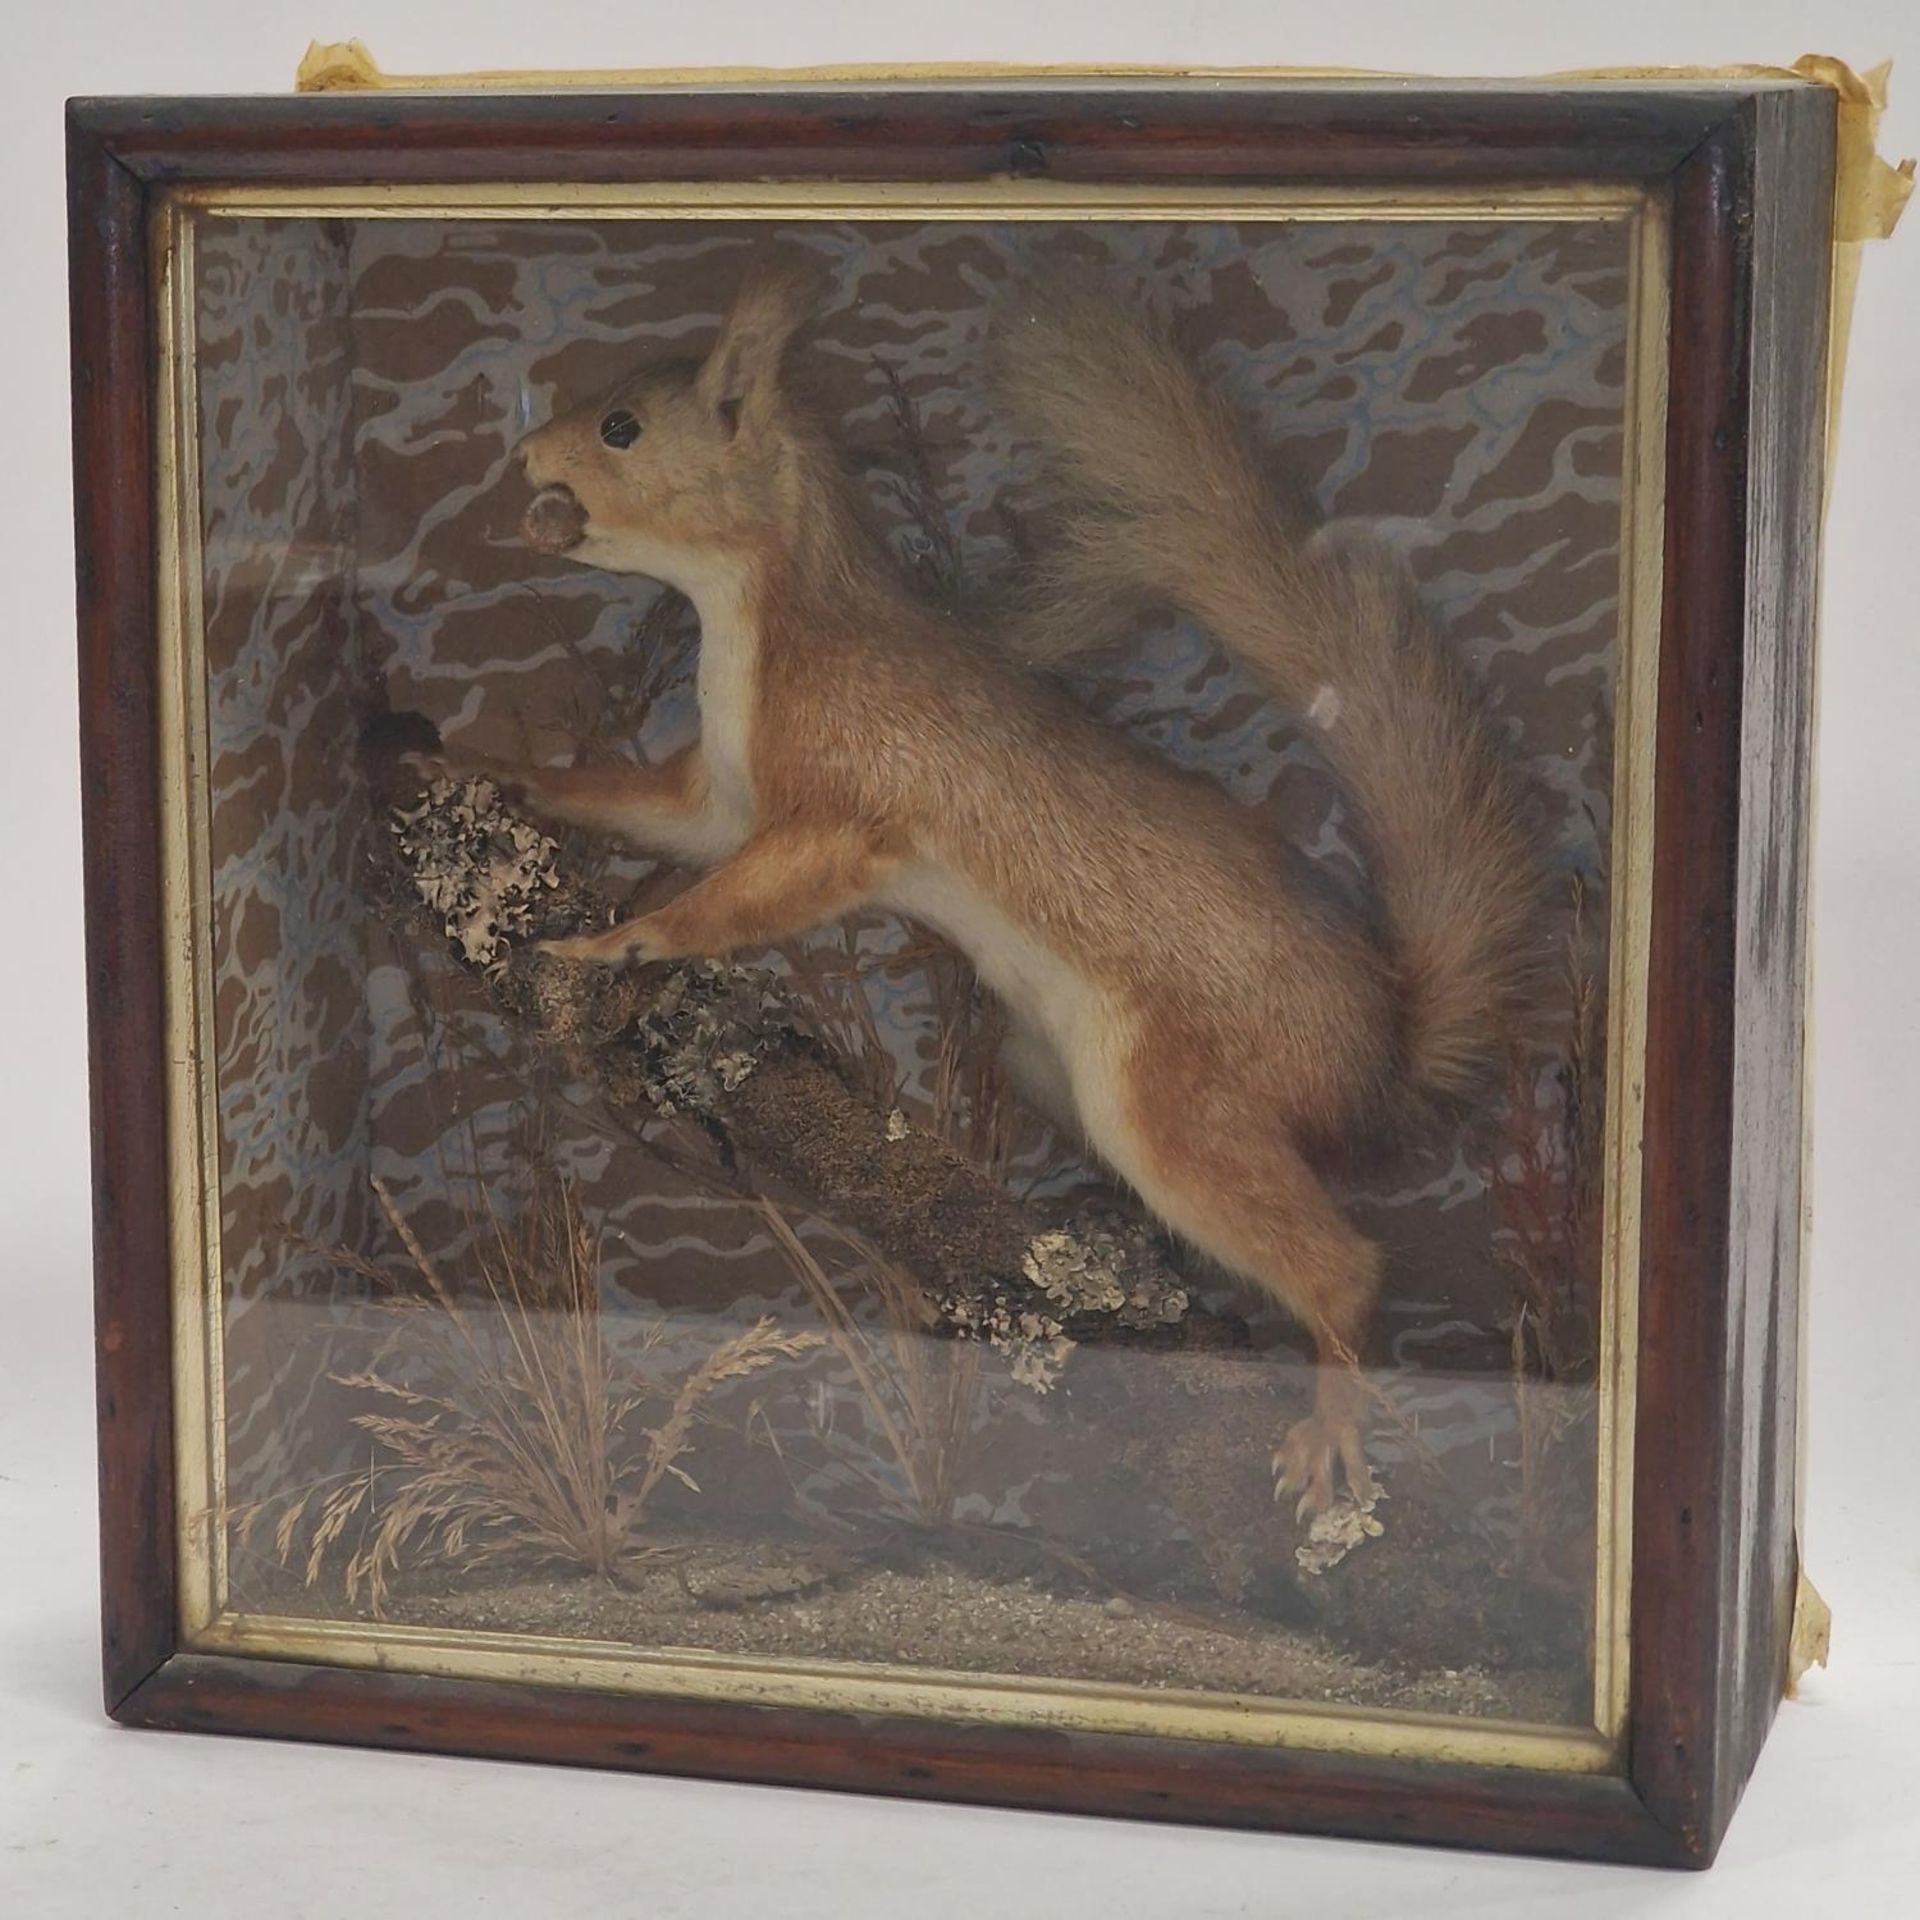 A cased taxidermy study of a squirrel 33x32x13cm.